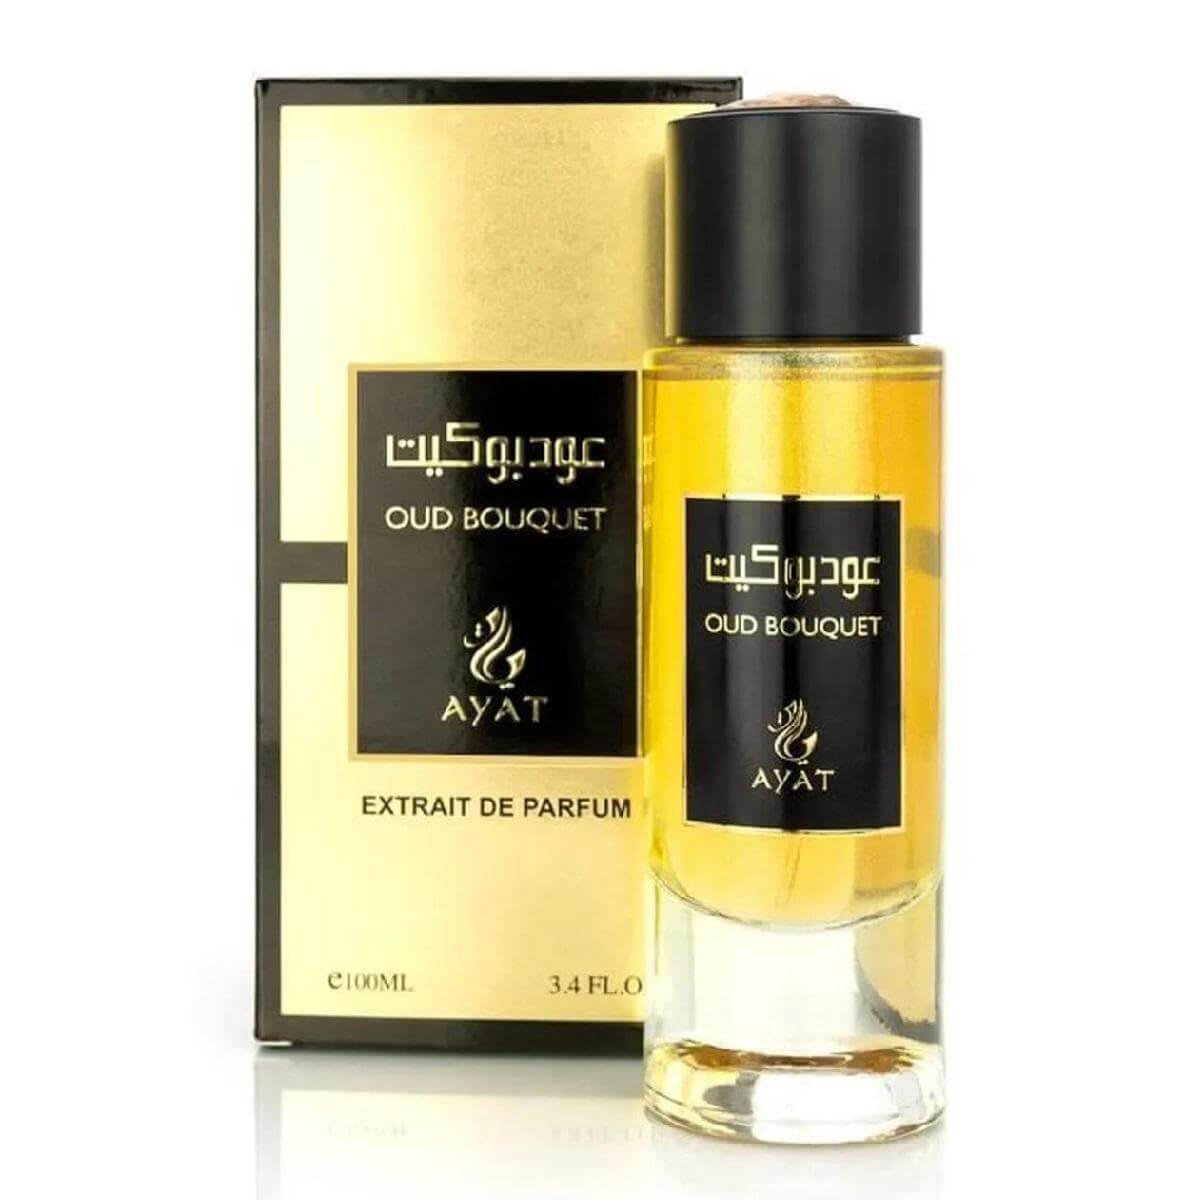 Oud Bouquet Perfume / Eau De Parfum 100Ml By Ayat Perfumes